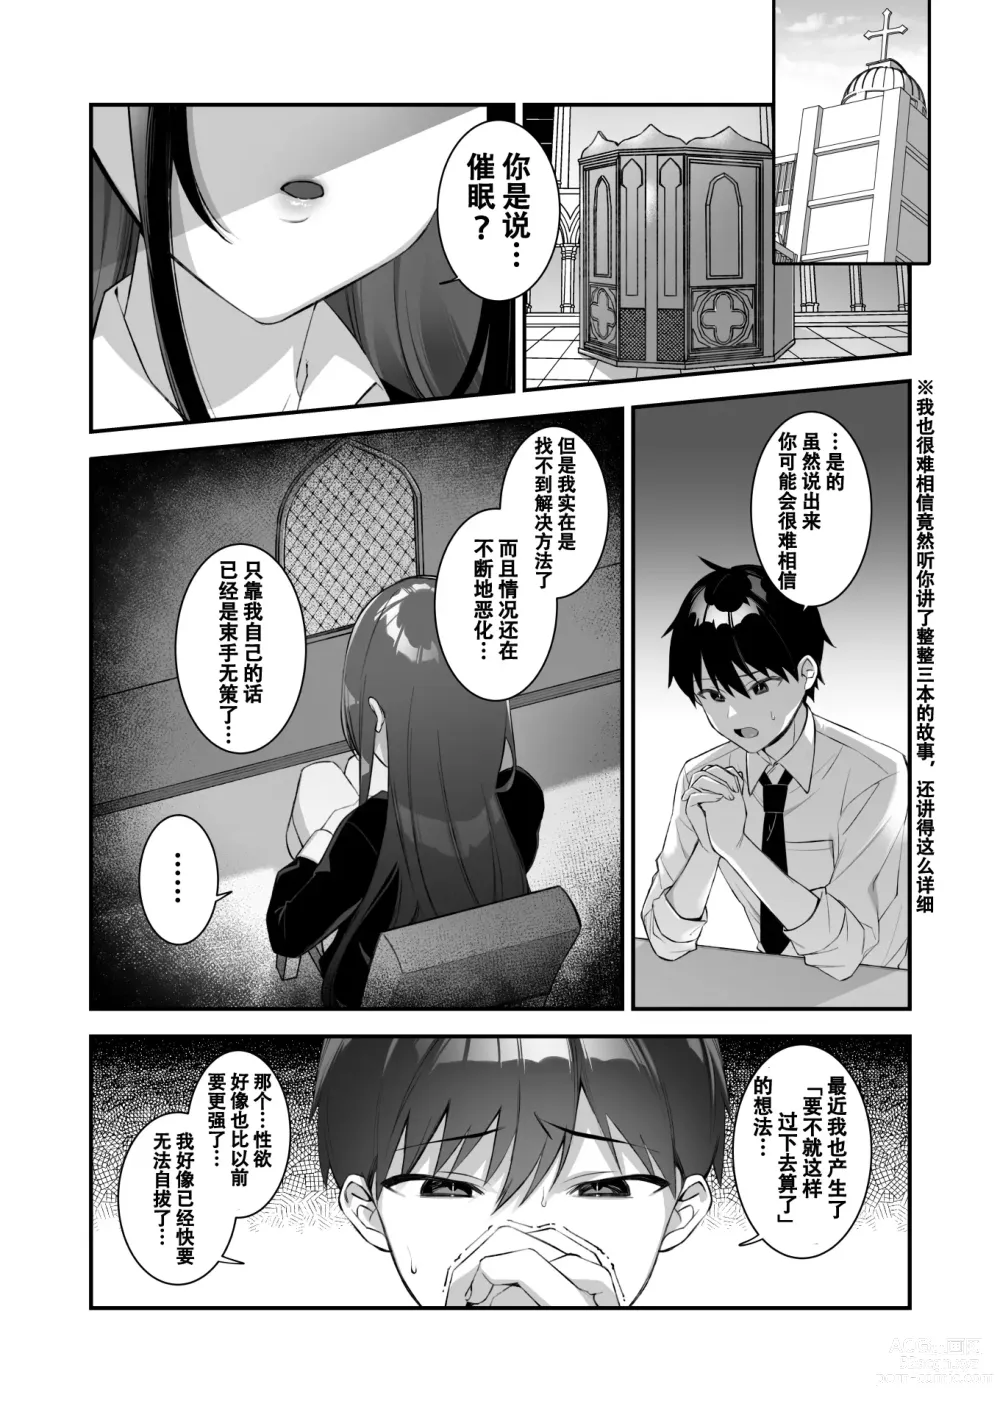 Page 61 of doujinshi oka sa re saimin dansi3 nin sika i nai gakuen de sei